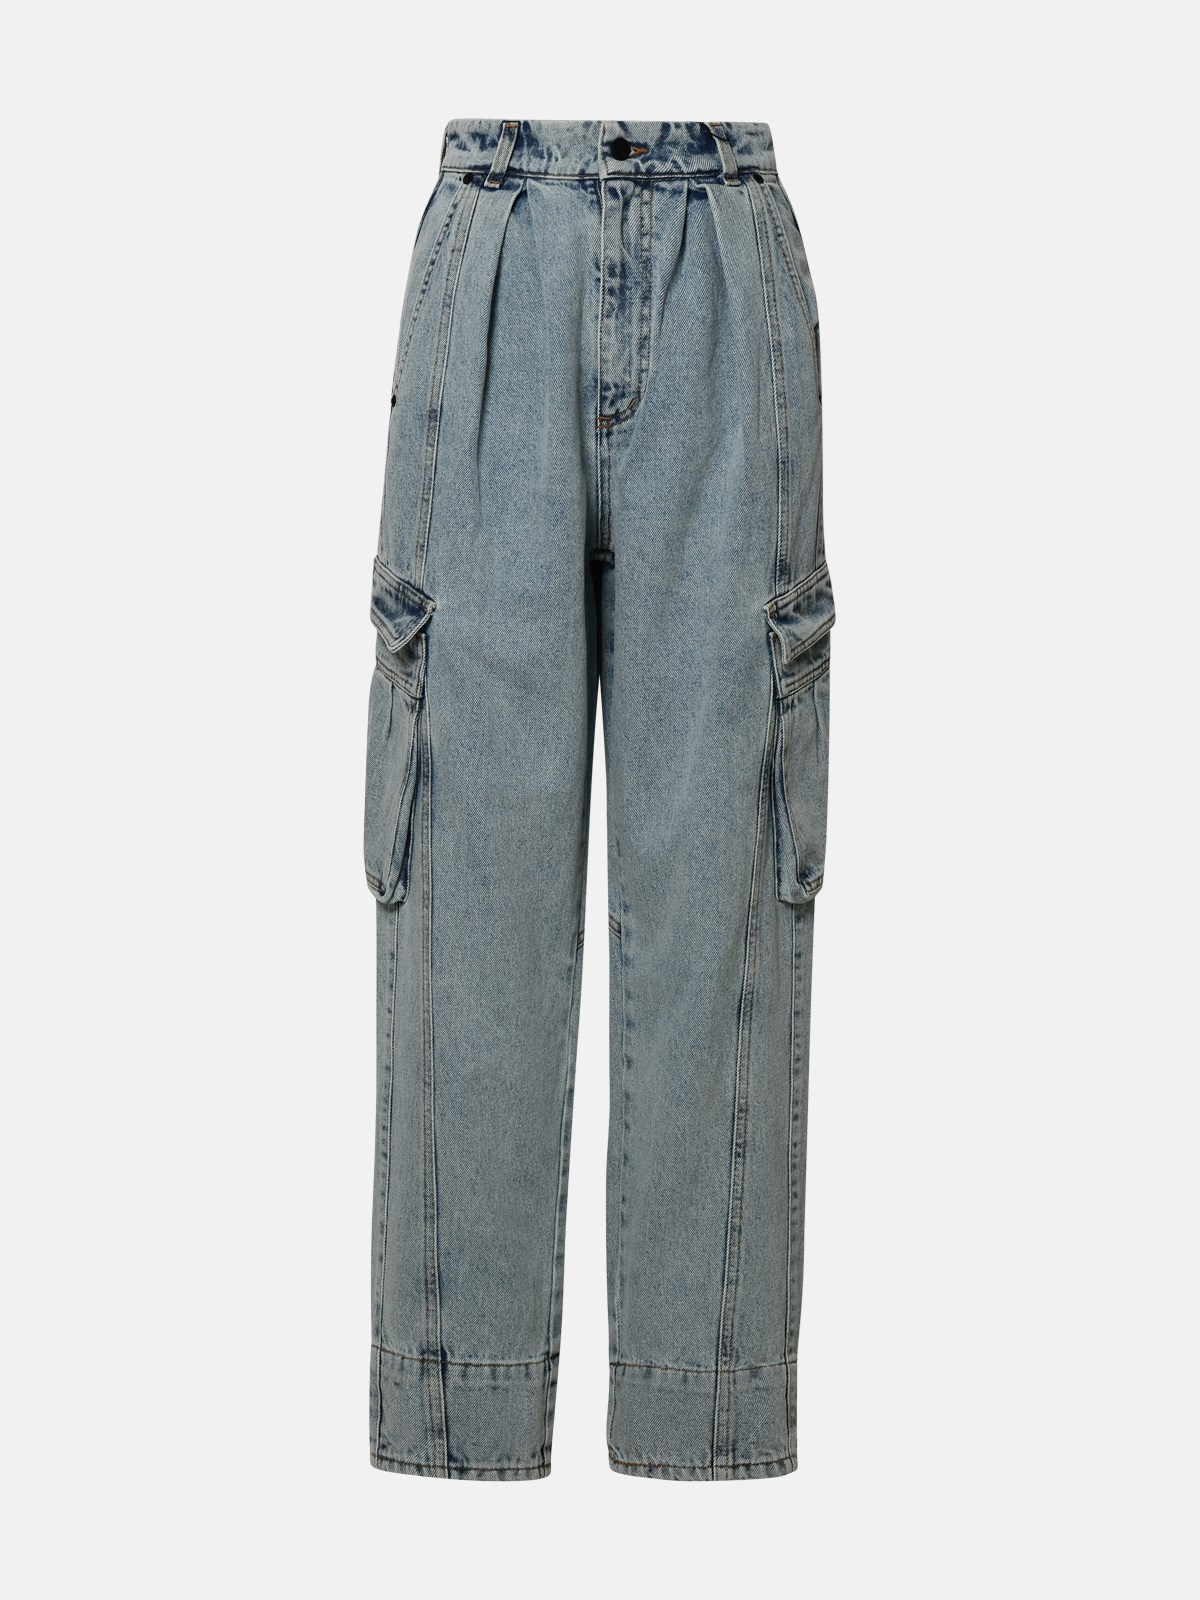 Shop The Mannei 'plana' Blue Cotton Jeans